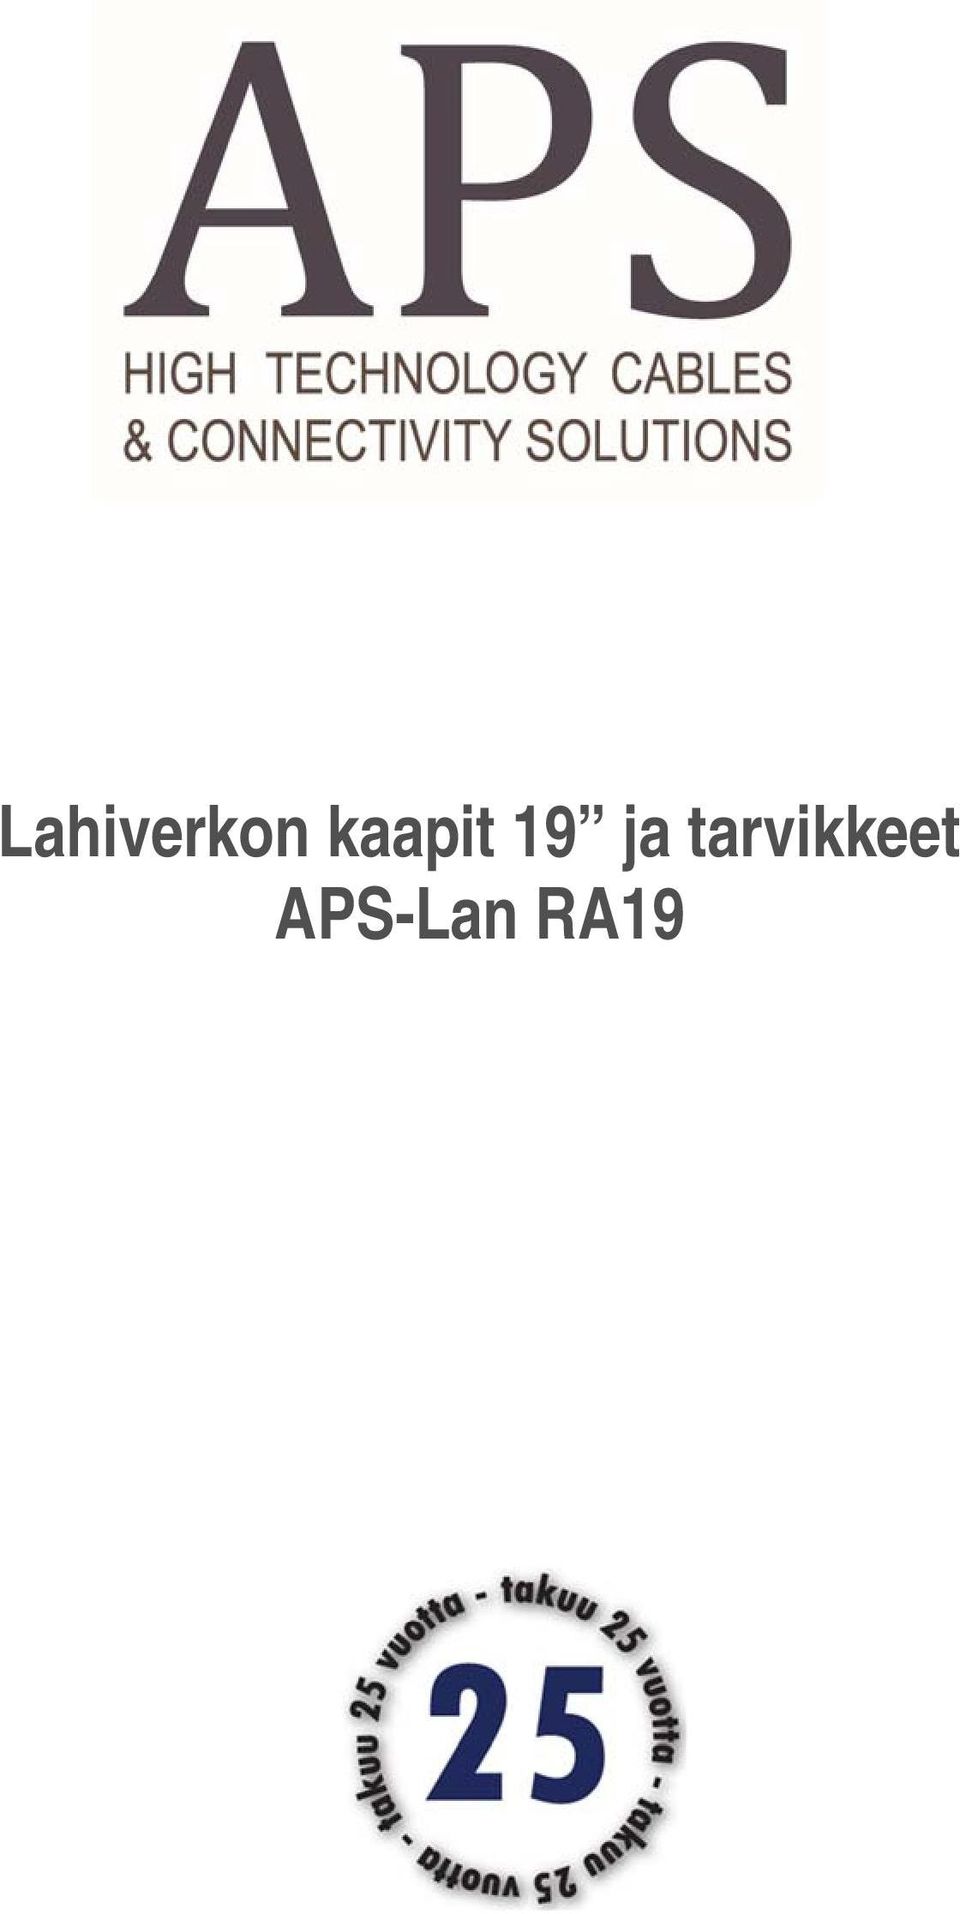 Lahiverkon kaapit 19 ja tarvikkeet APS-Lan RA19 - PDF Free Download